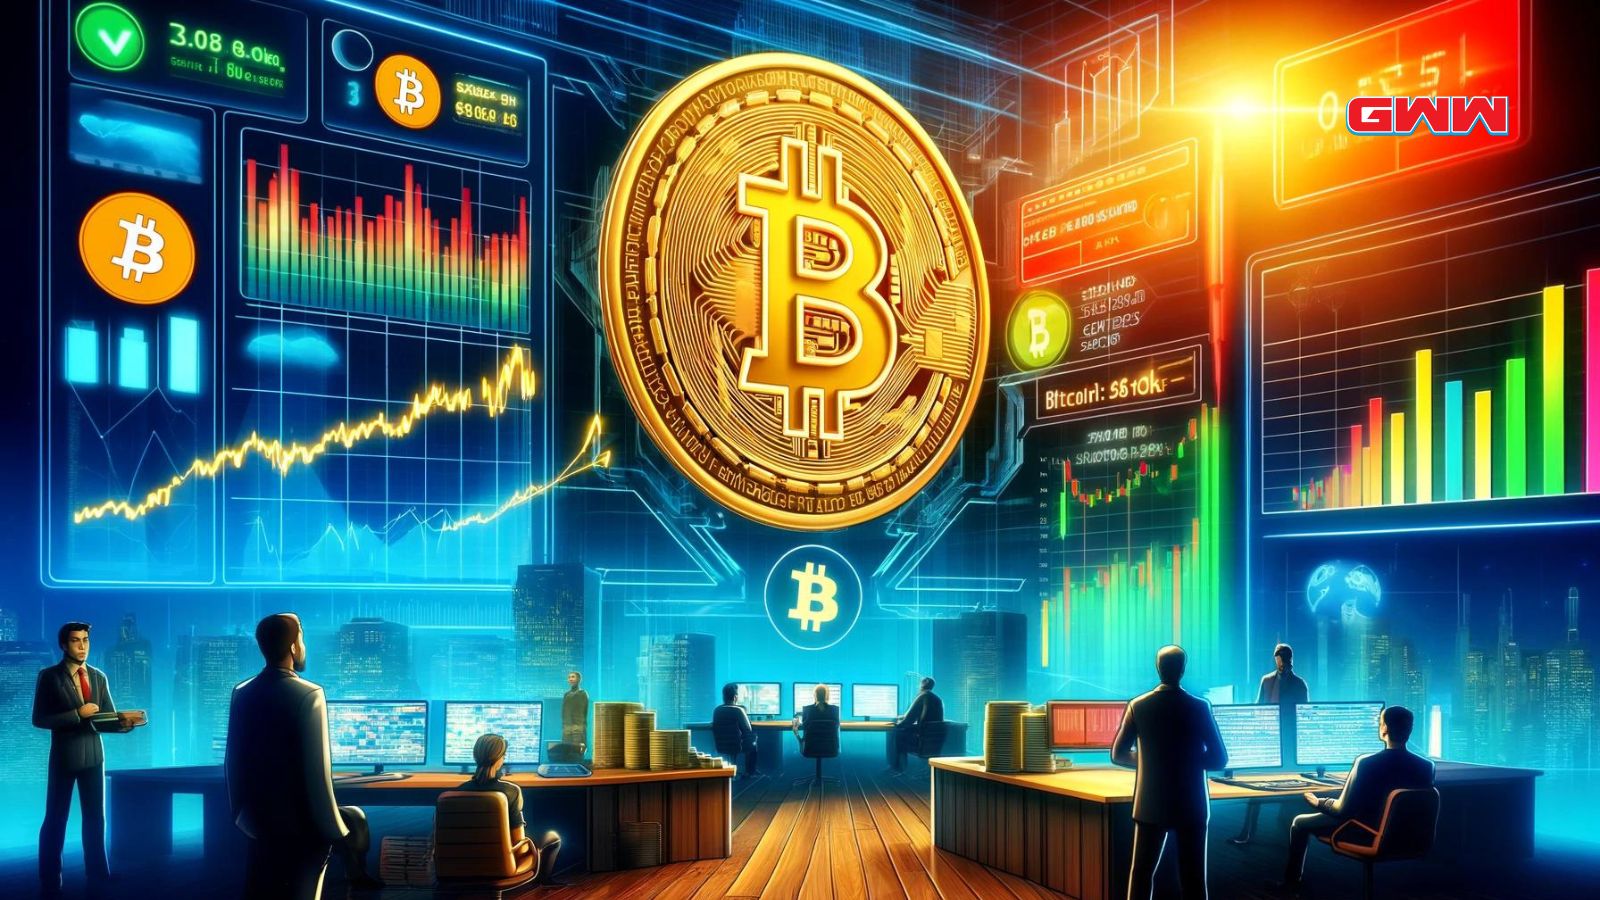 Una escena digital vibrante que muestra el precio de Bitcoin manteniéndose fuerte en $66.9K